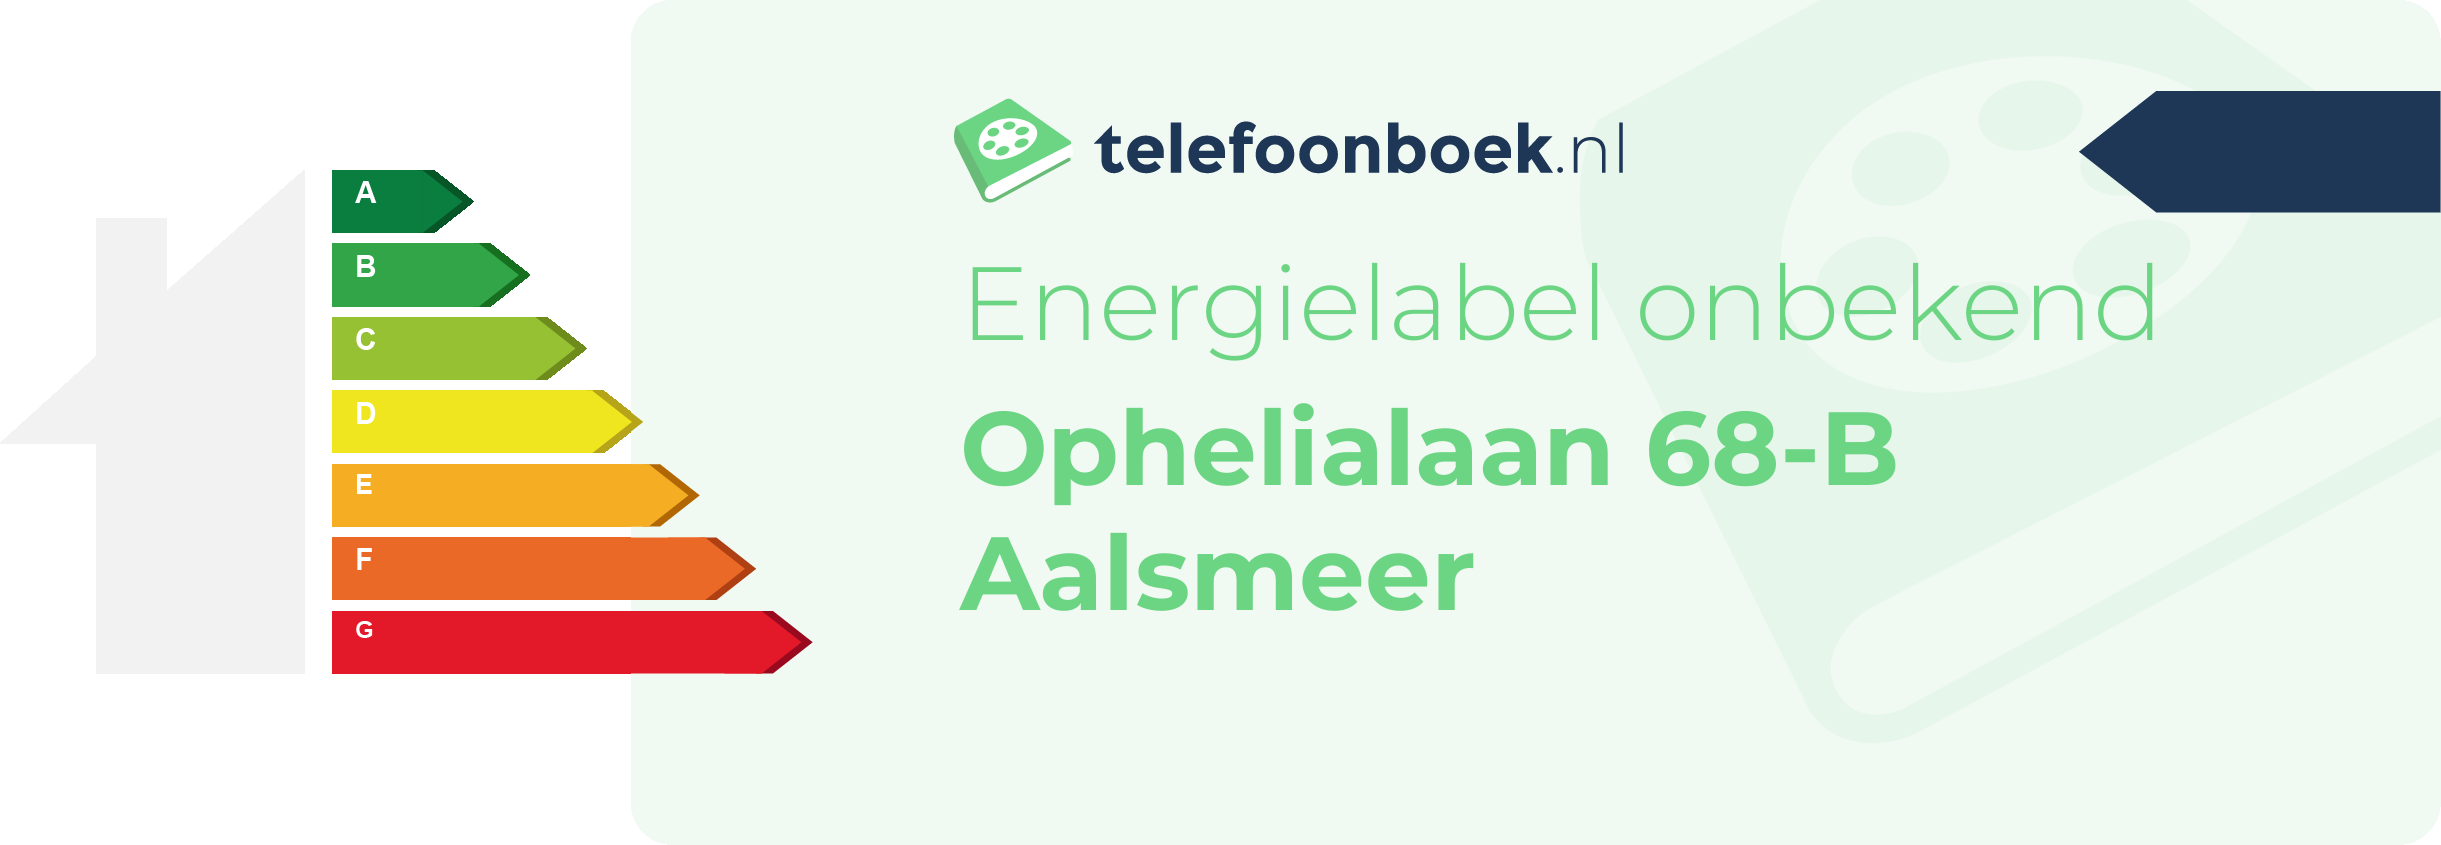 Energielabel Ophelialaan 68-B Aalsmeer